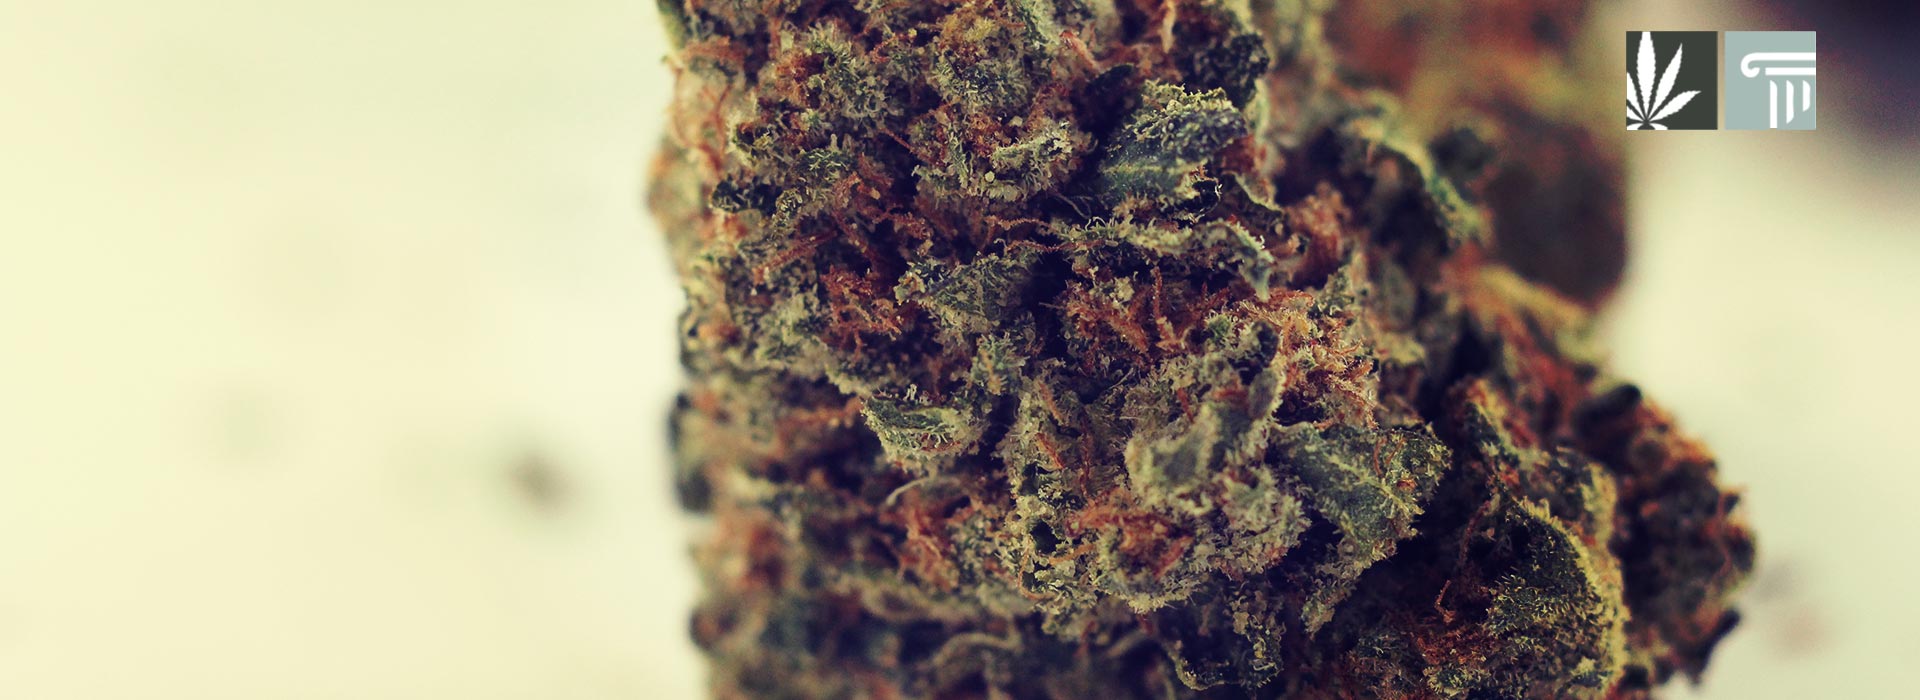 Rhode Island marijuana legalization